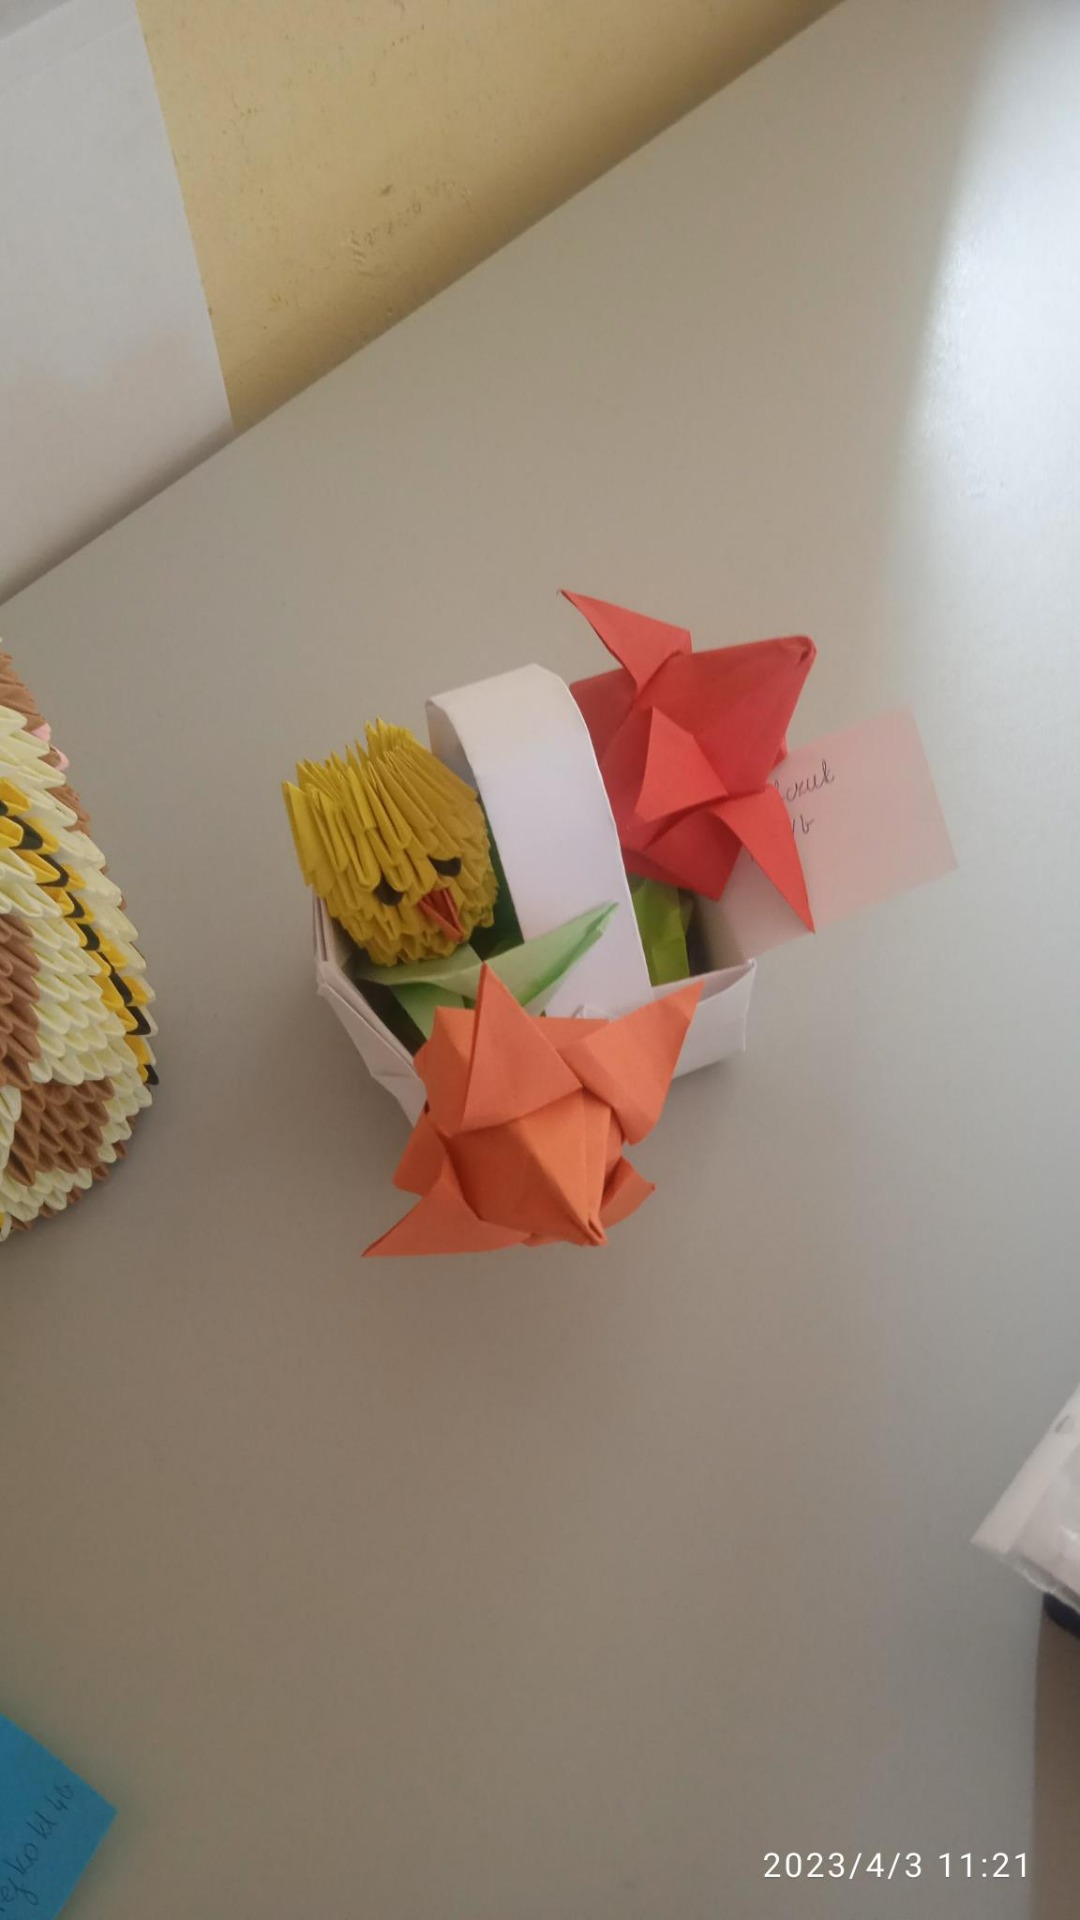 Wyniki szkolnego konkursu origami - 03.04.2023 r.